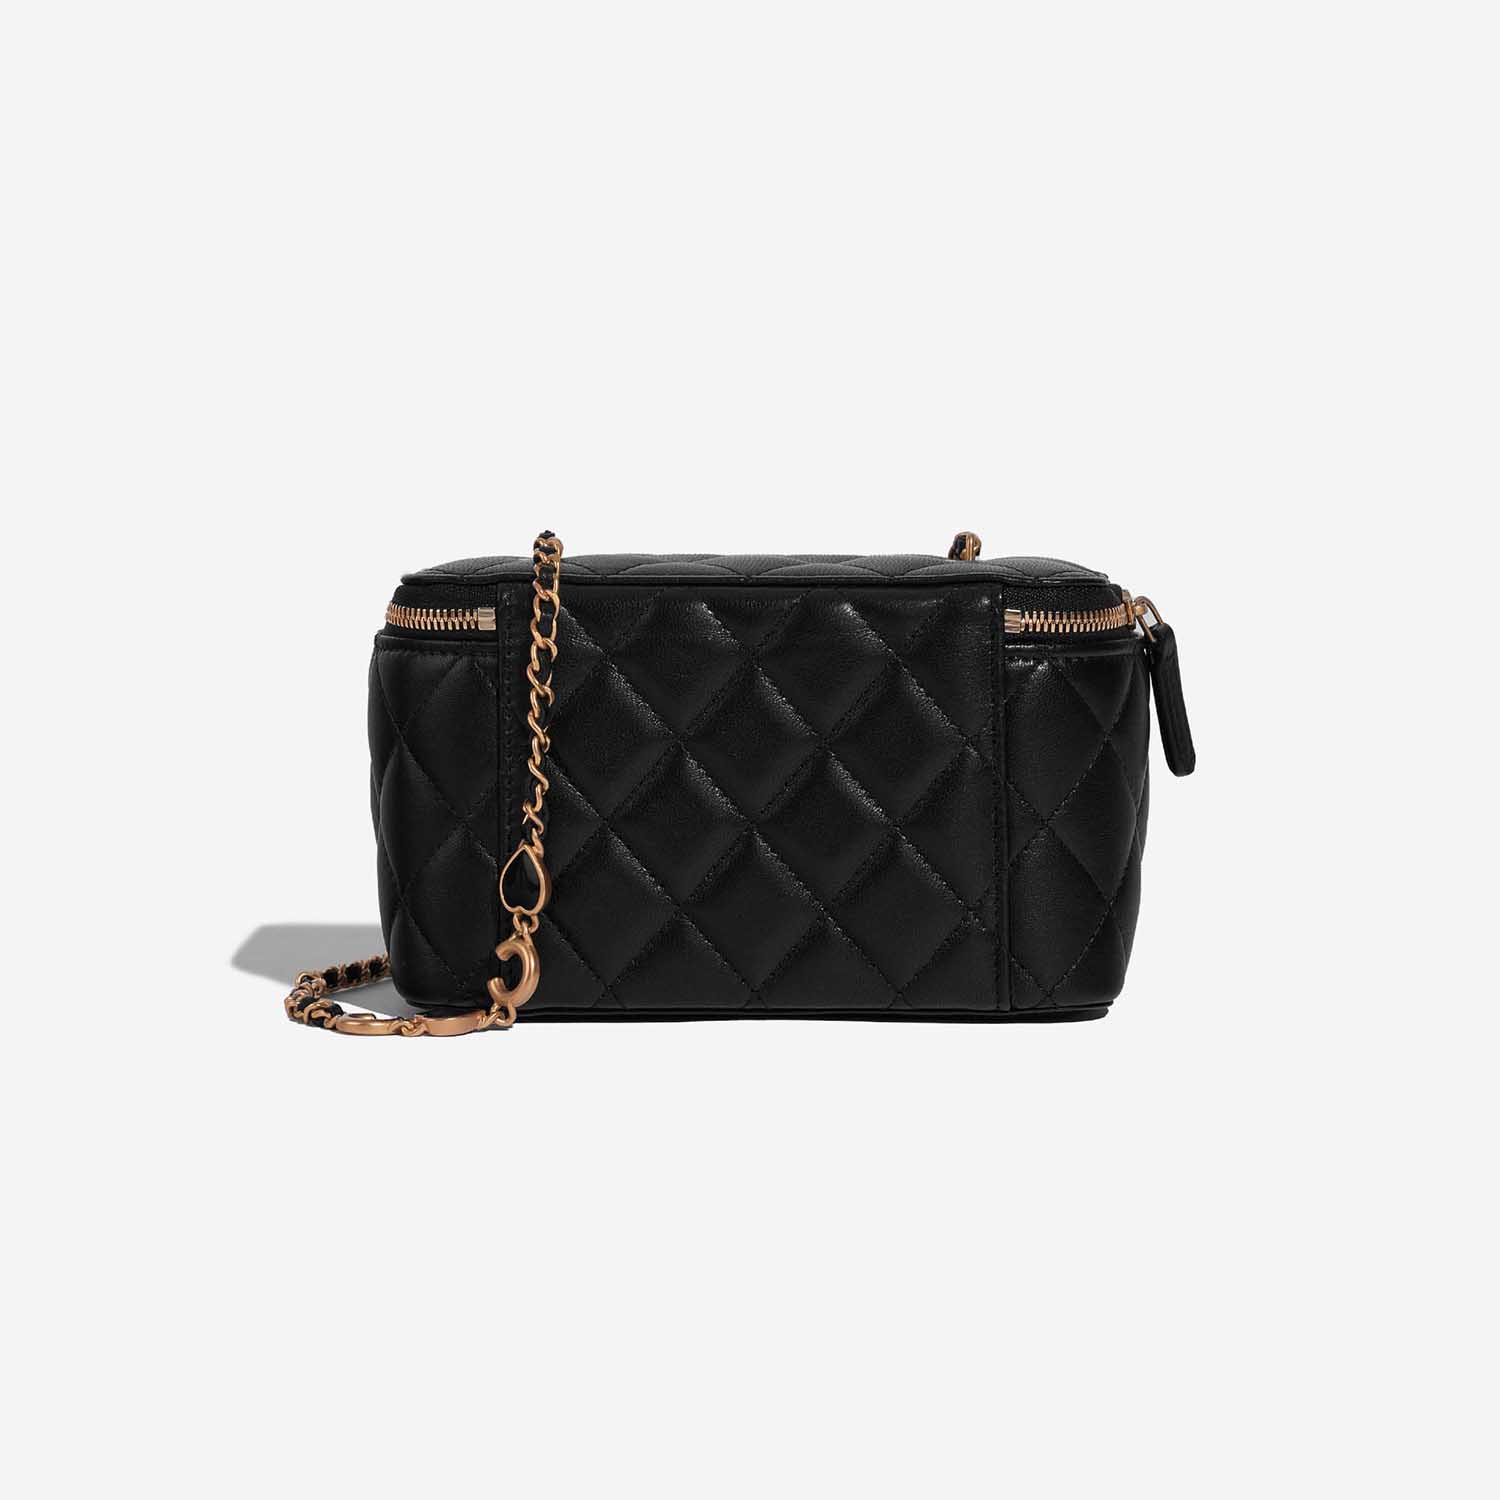 Chanel Vanity Small Black Back | Verkaufen Sie Ihre Designer-Tasche auf Saclab.com